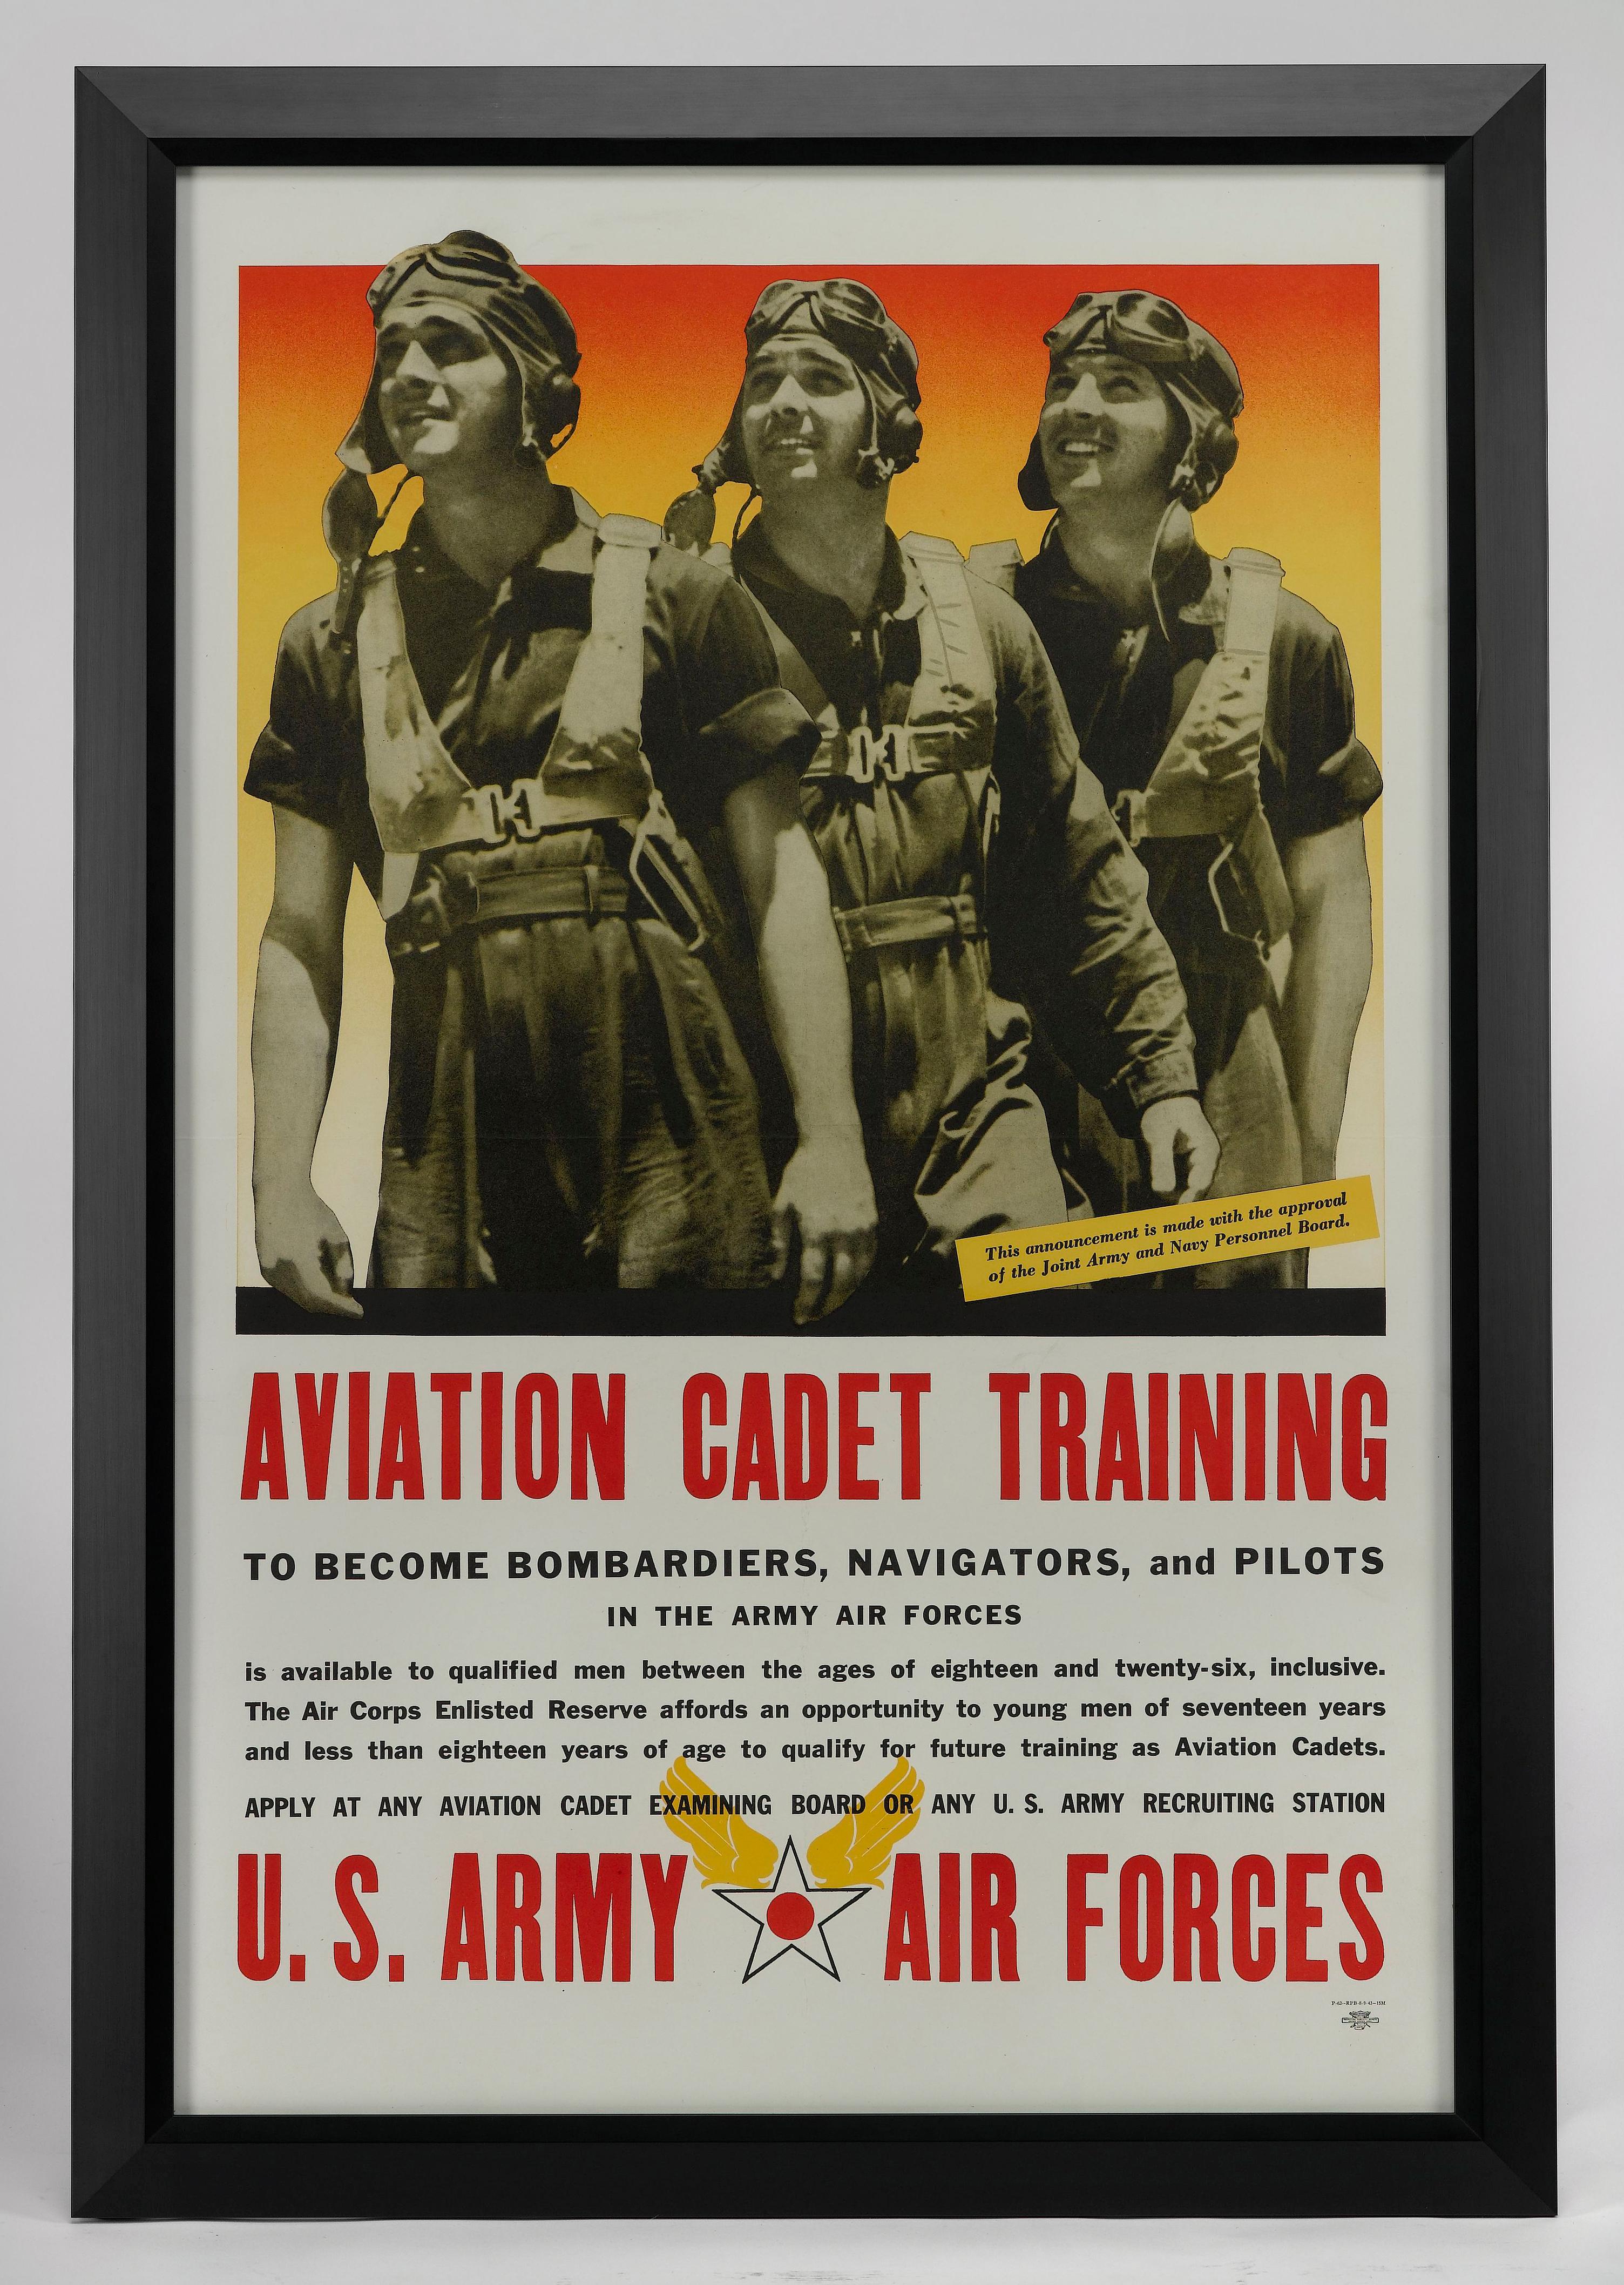 Präsentiert wird ein altes Rekrutierungsplakat der U.S. Army Air Forces aus dem Zweiten Weltkrieg. Das Plakat wurde im August 1943 vom Recruiting Publicity Bureau veröffentlicht. Das Plakat zeigt drei junge Männer in Fluganzügen, die stolz dem Ruf